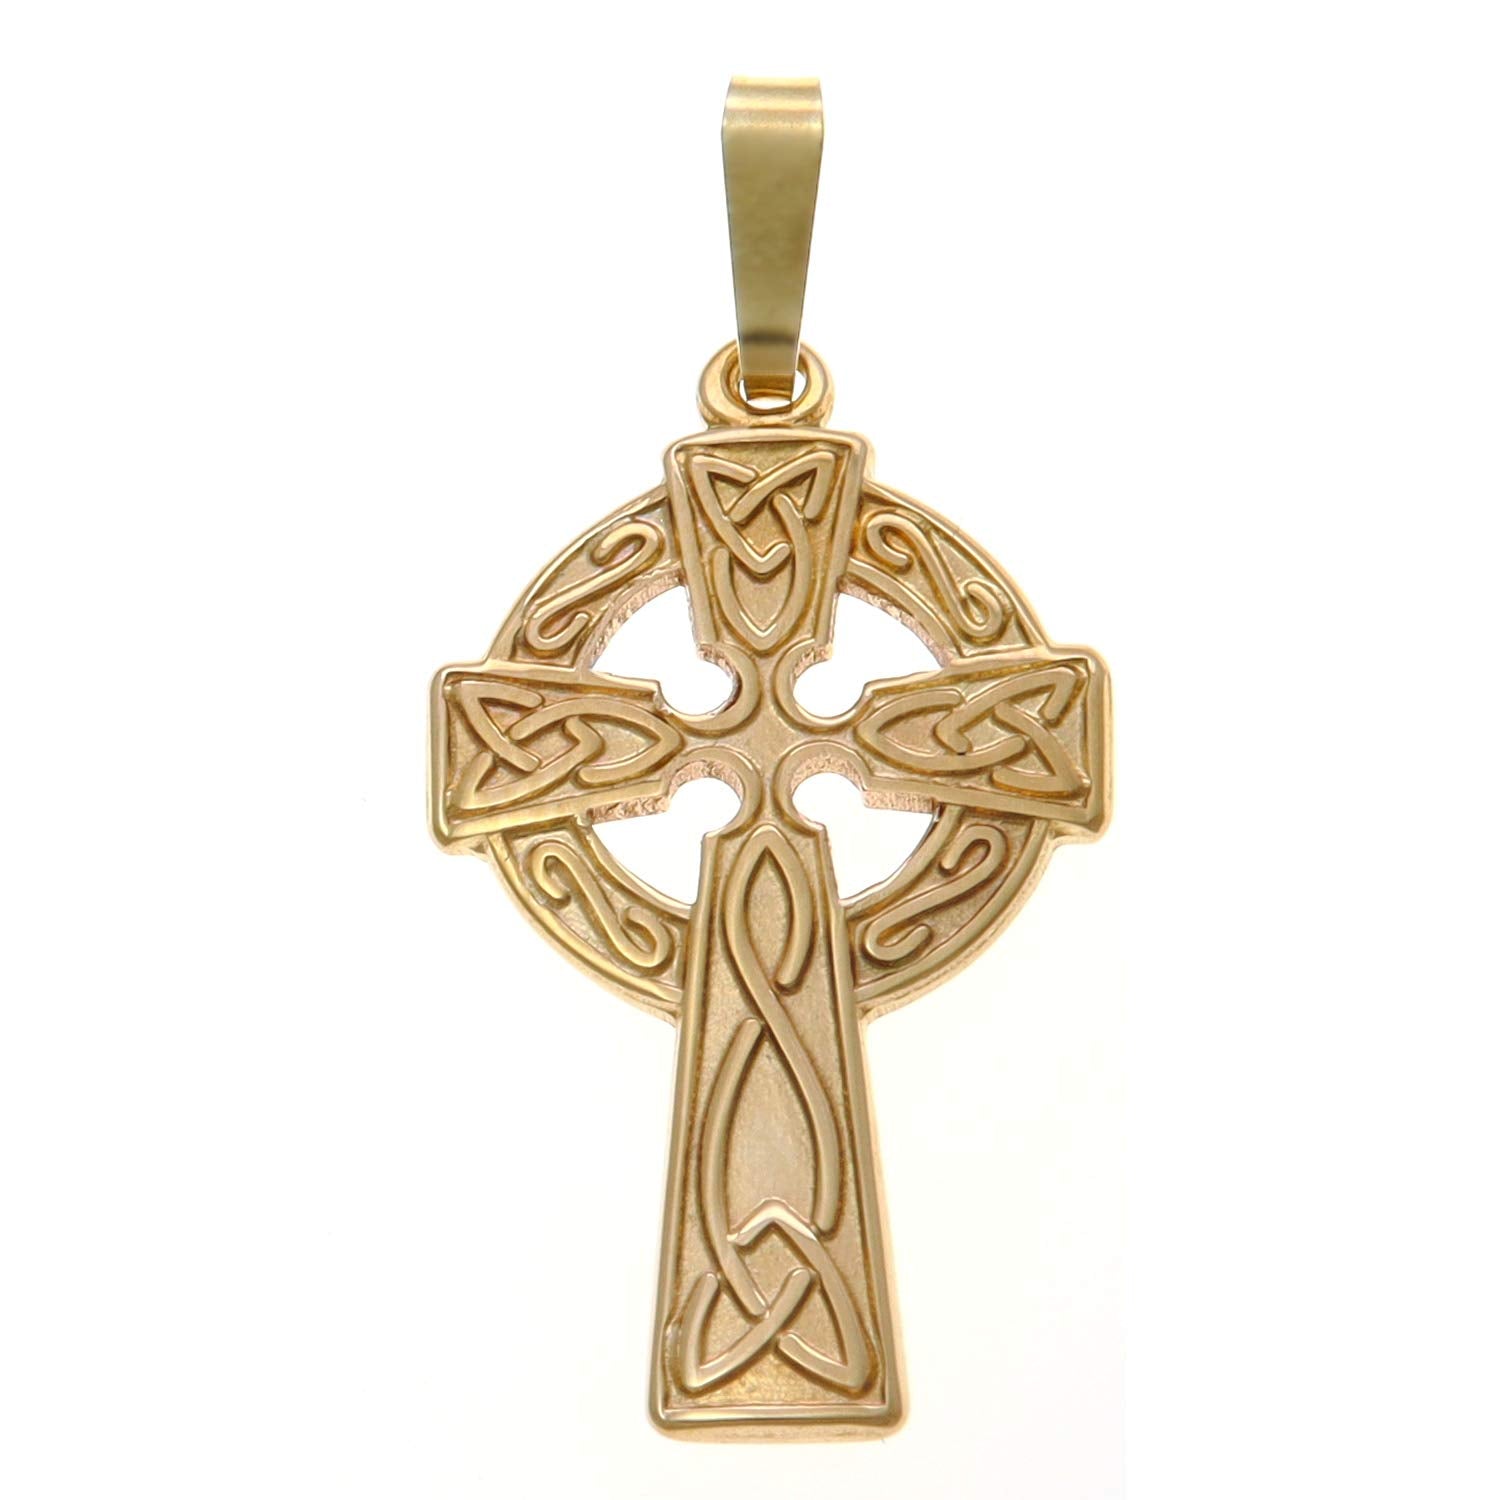 MENDEL 10K Gold Plated Irish Celtic Cross Pendant Necklace For Men Women  Chain | eBay